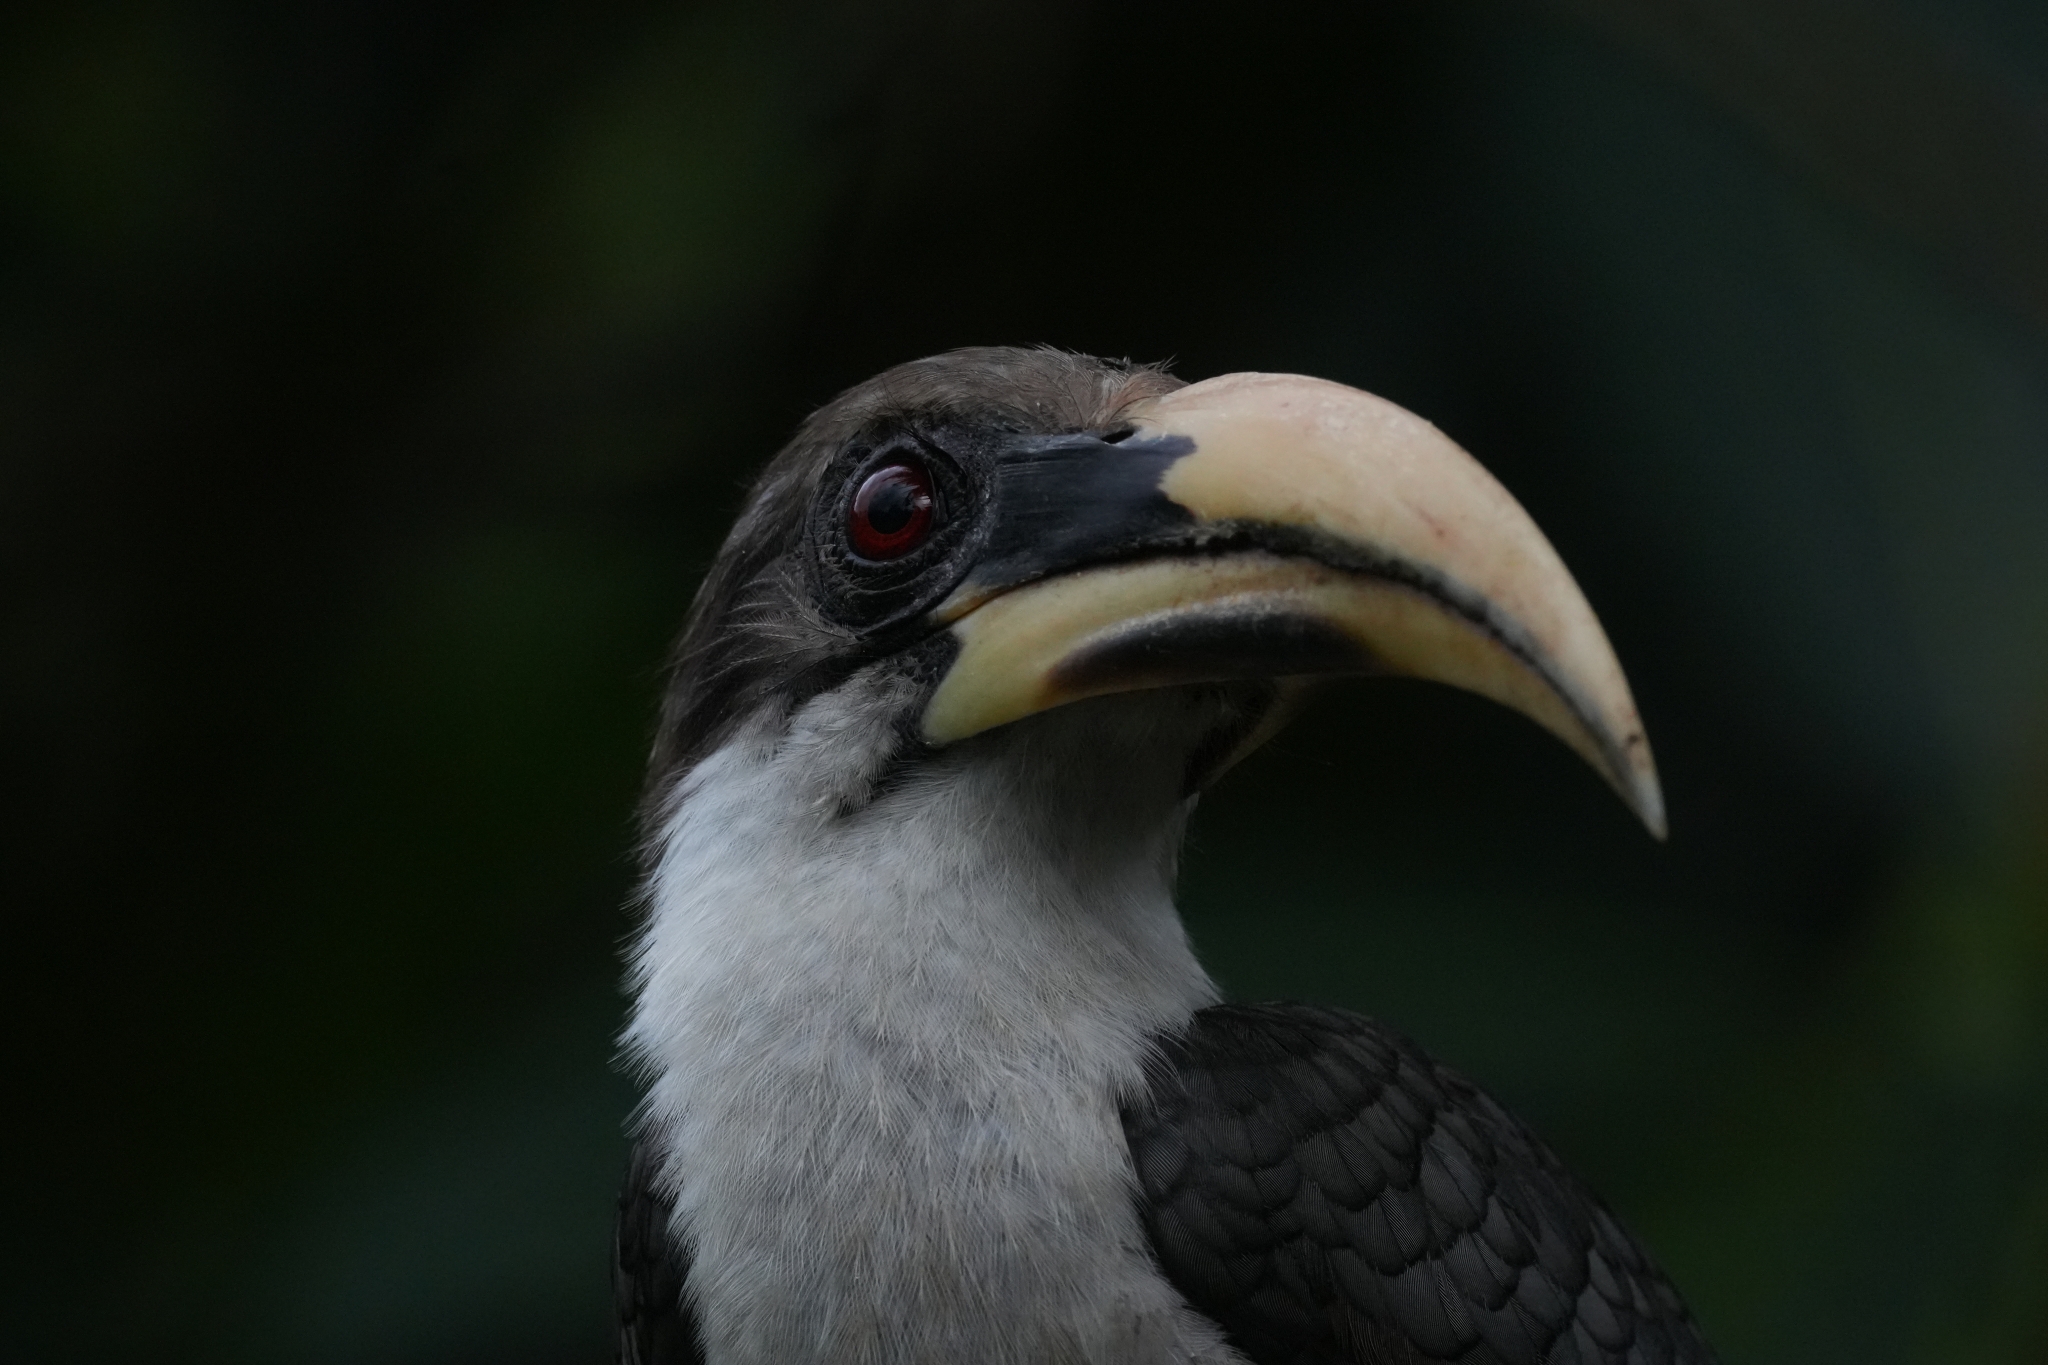 A toucan's head